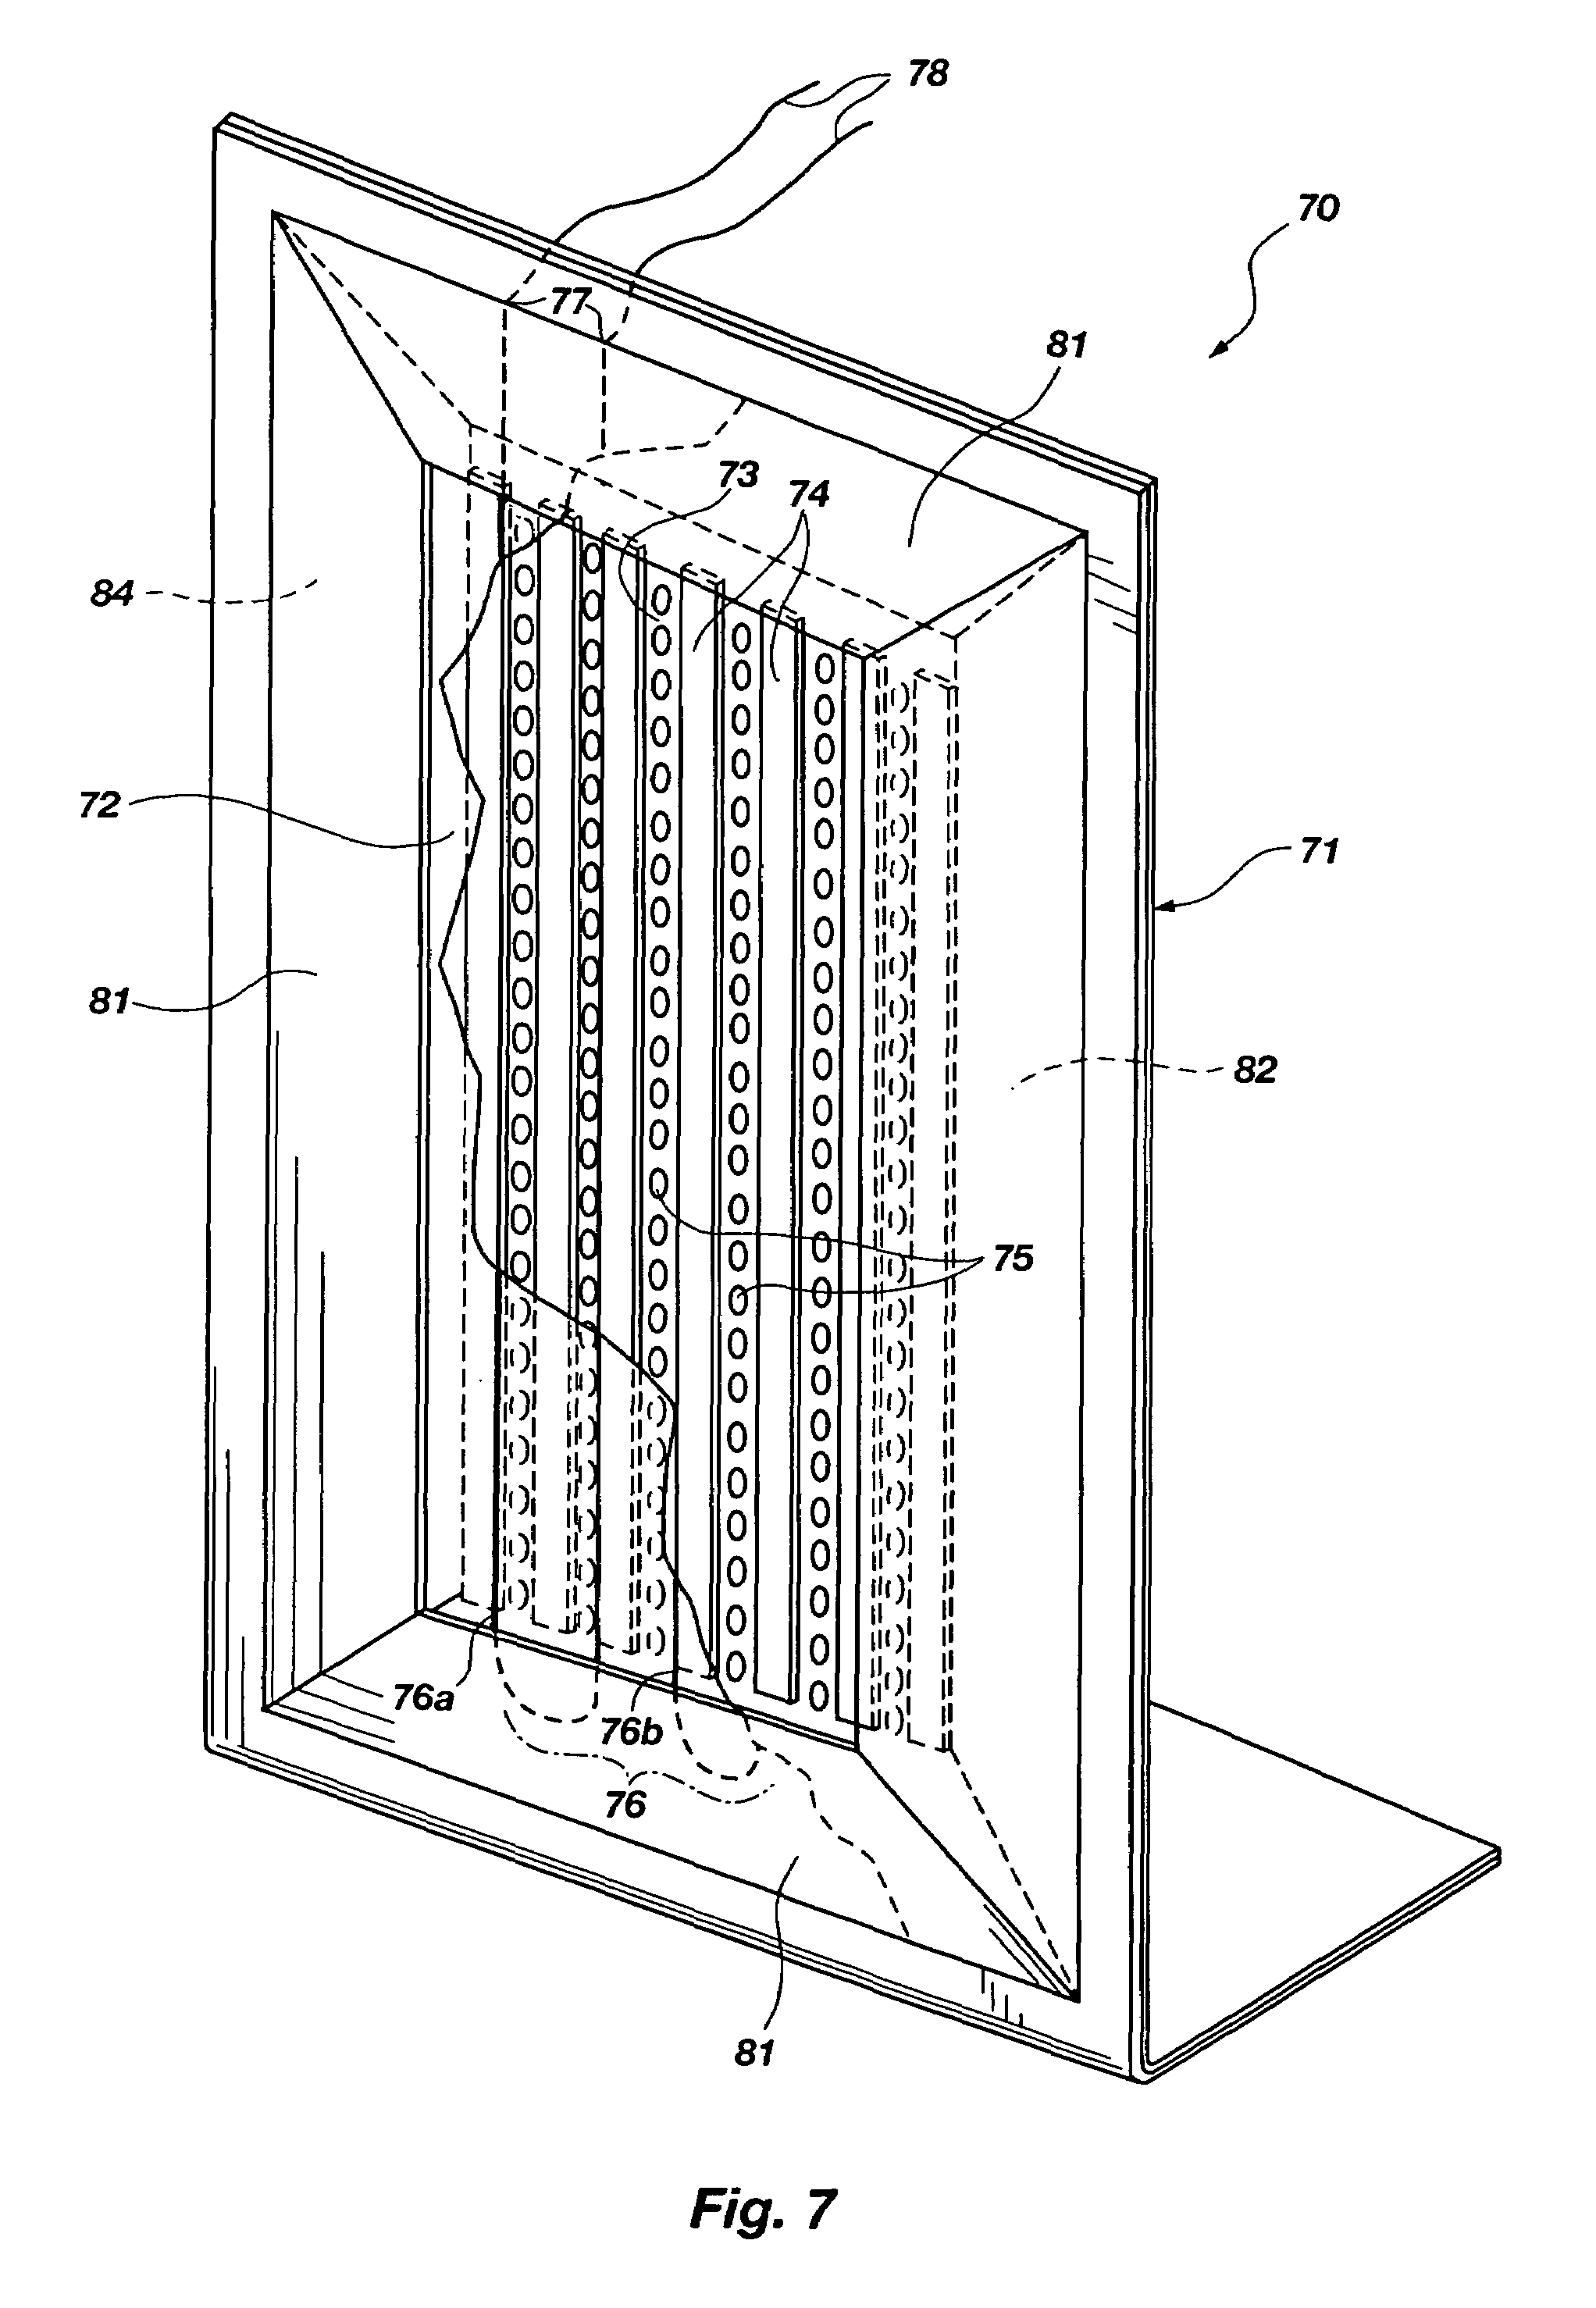 Single end planar magnetic speaker